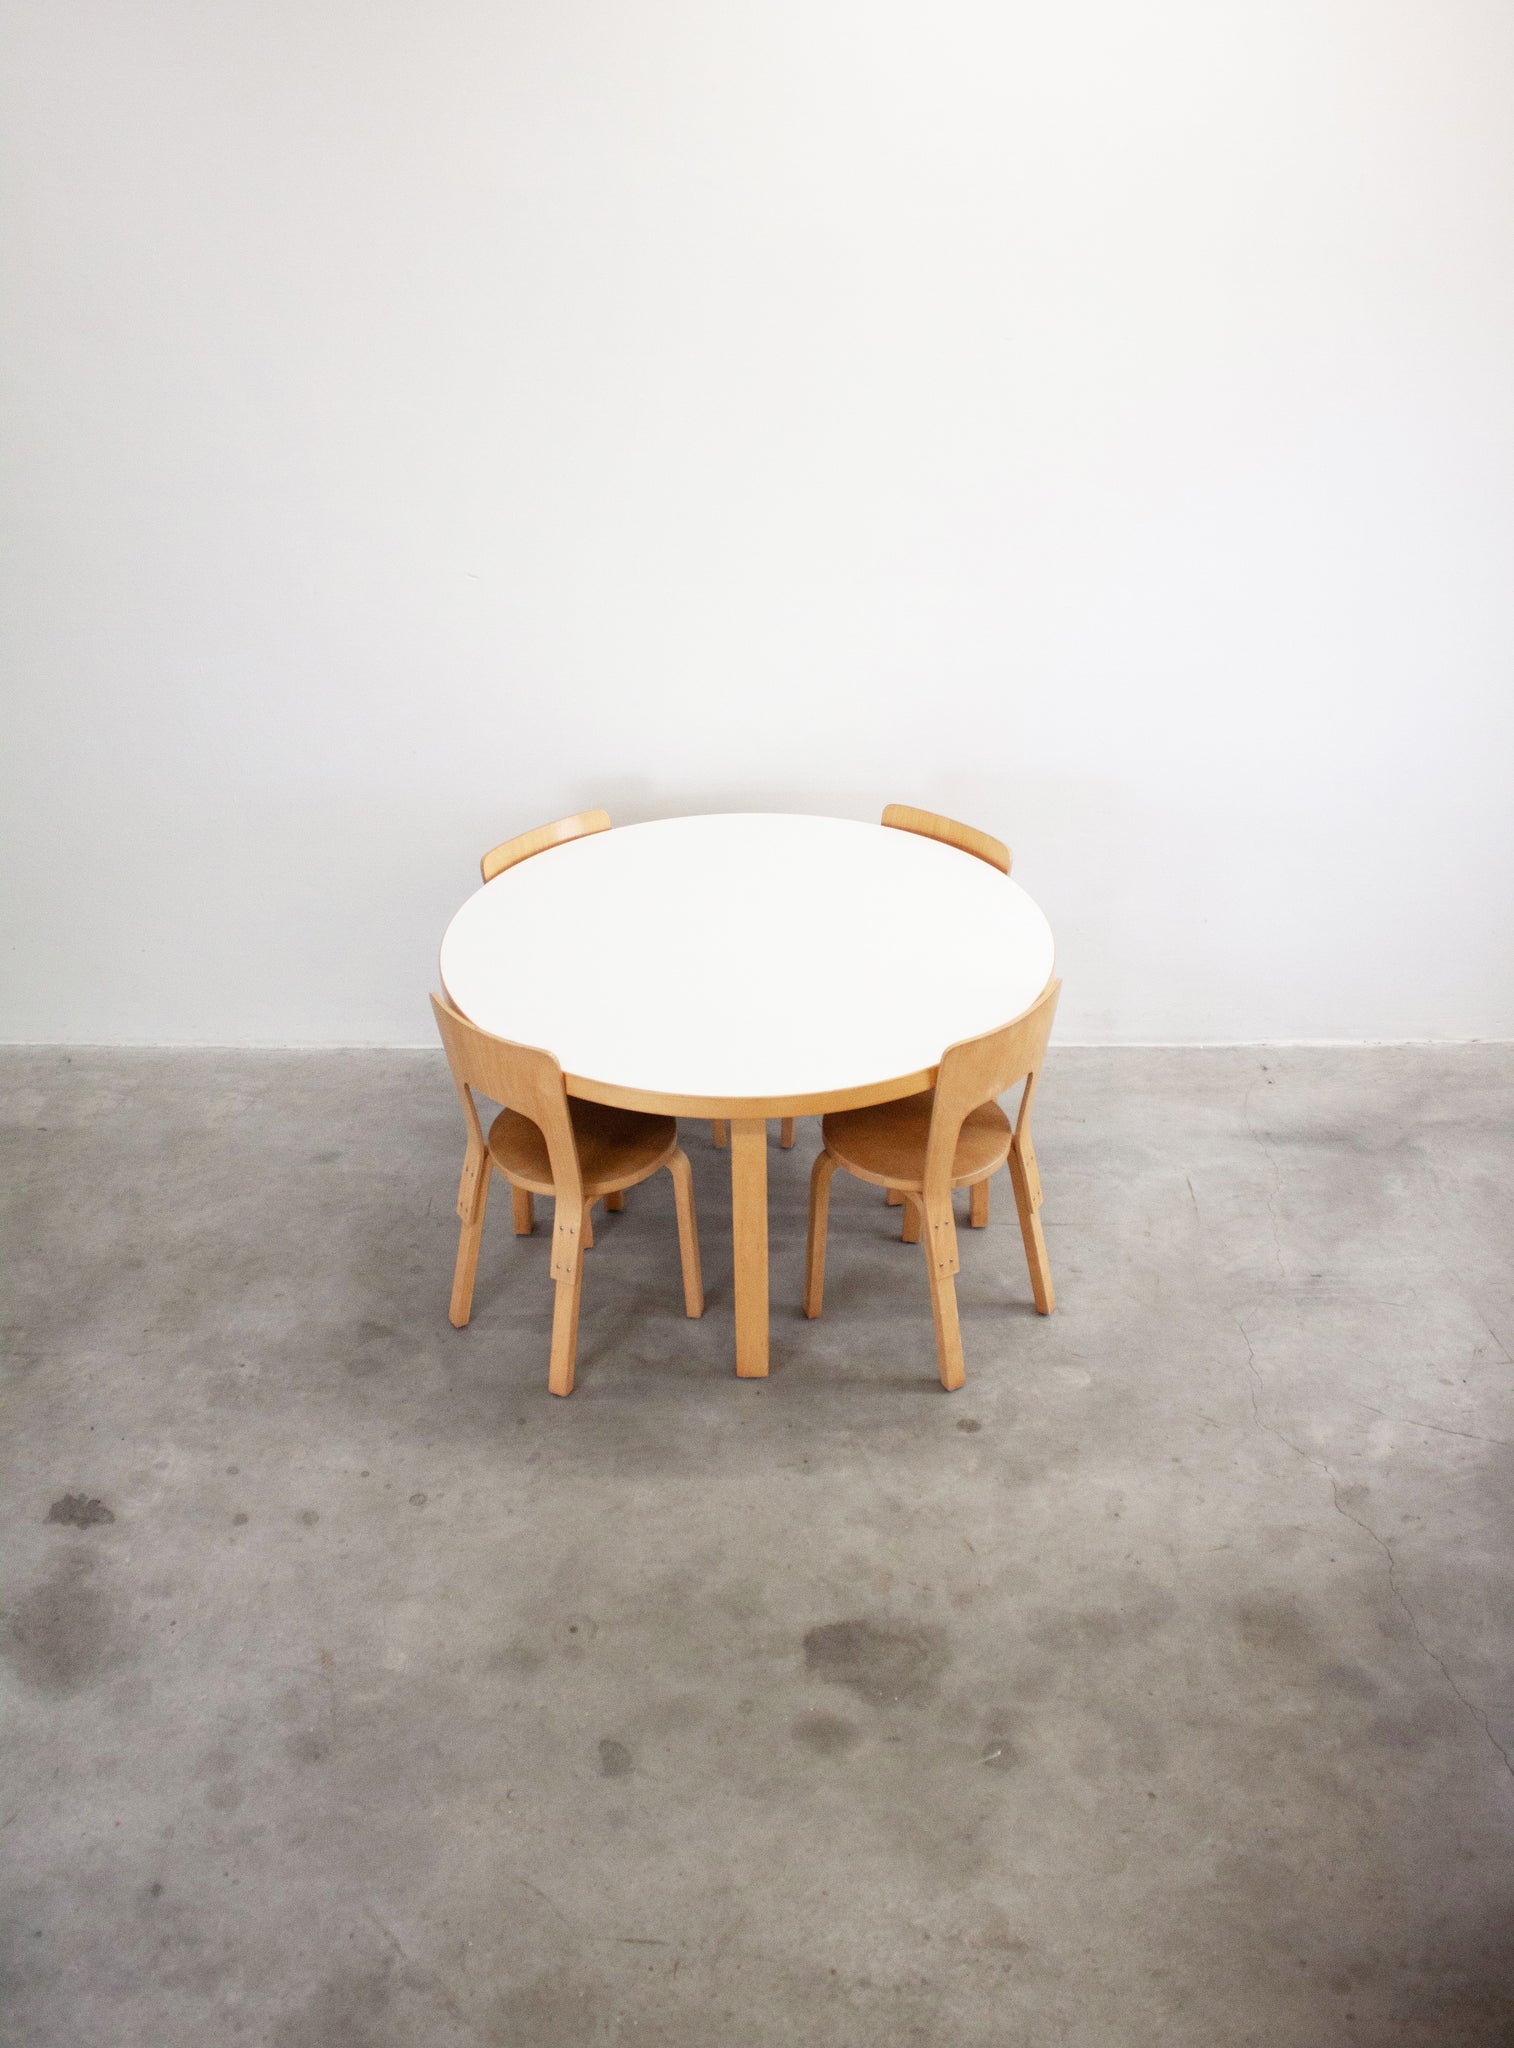 Artek Model 91 Dining Table by Alvar Aalto (White)